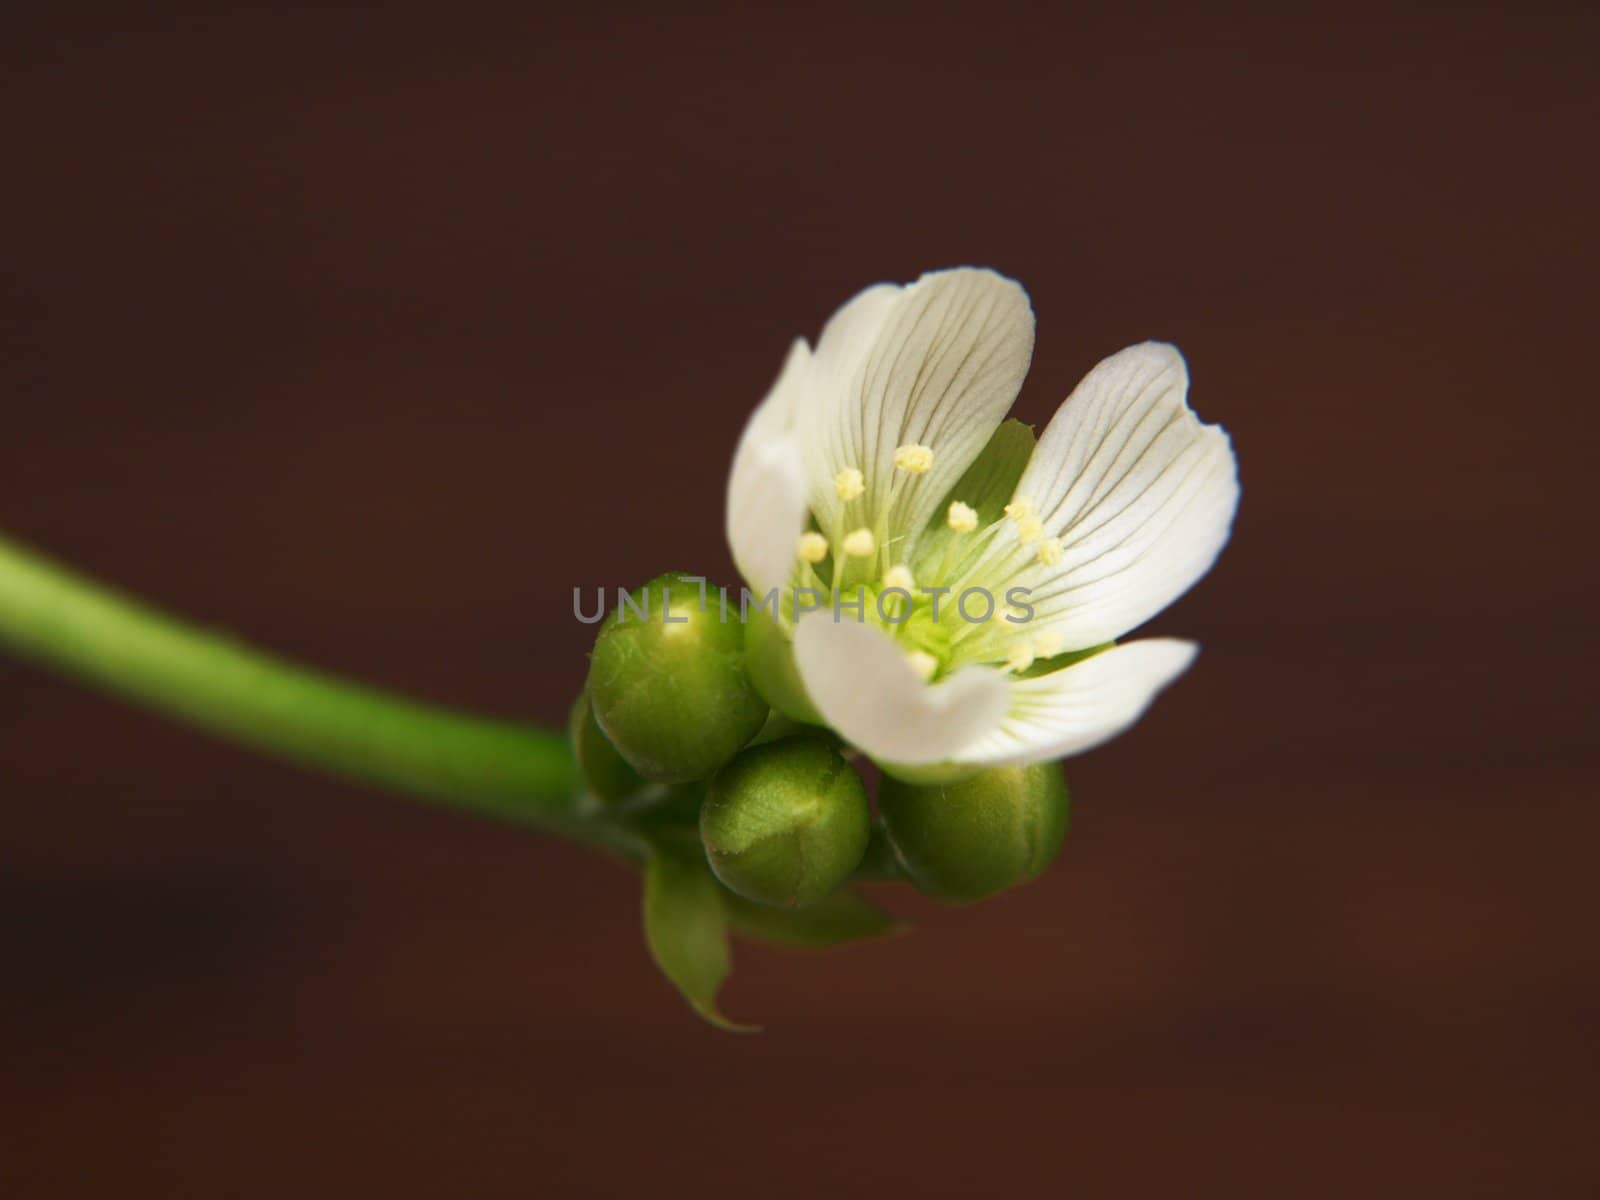 Strickerplant, white flower by Arvebettum